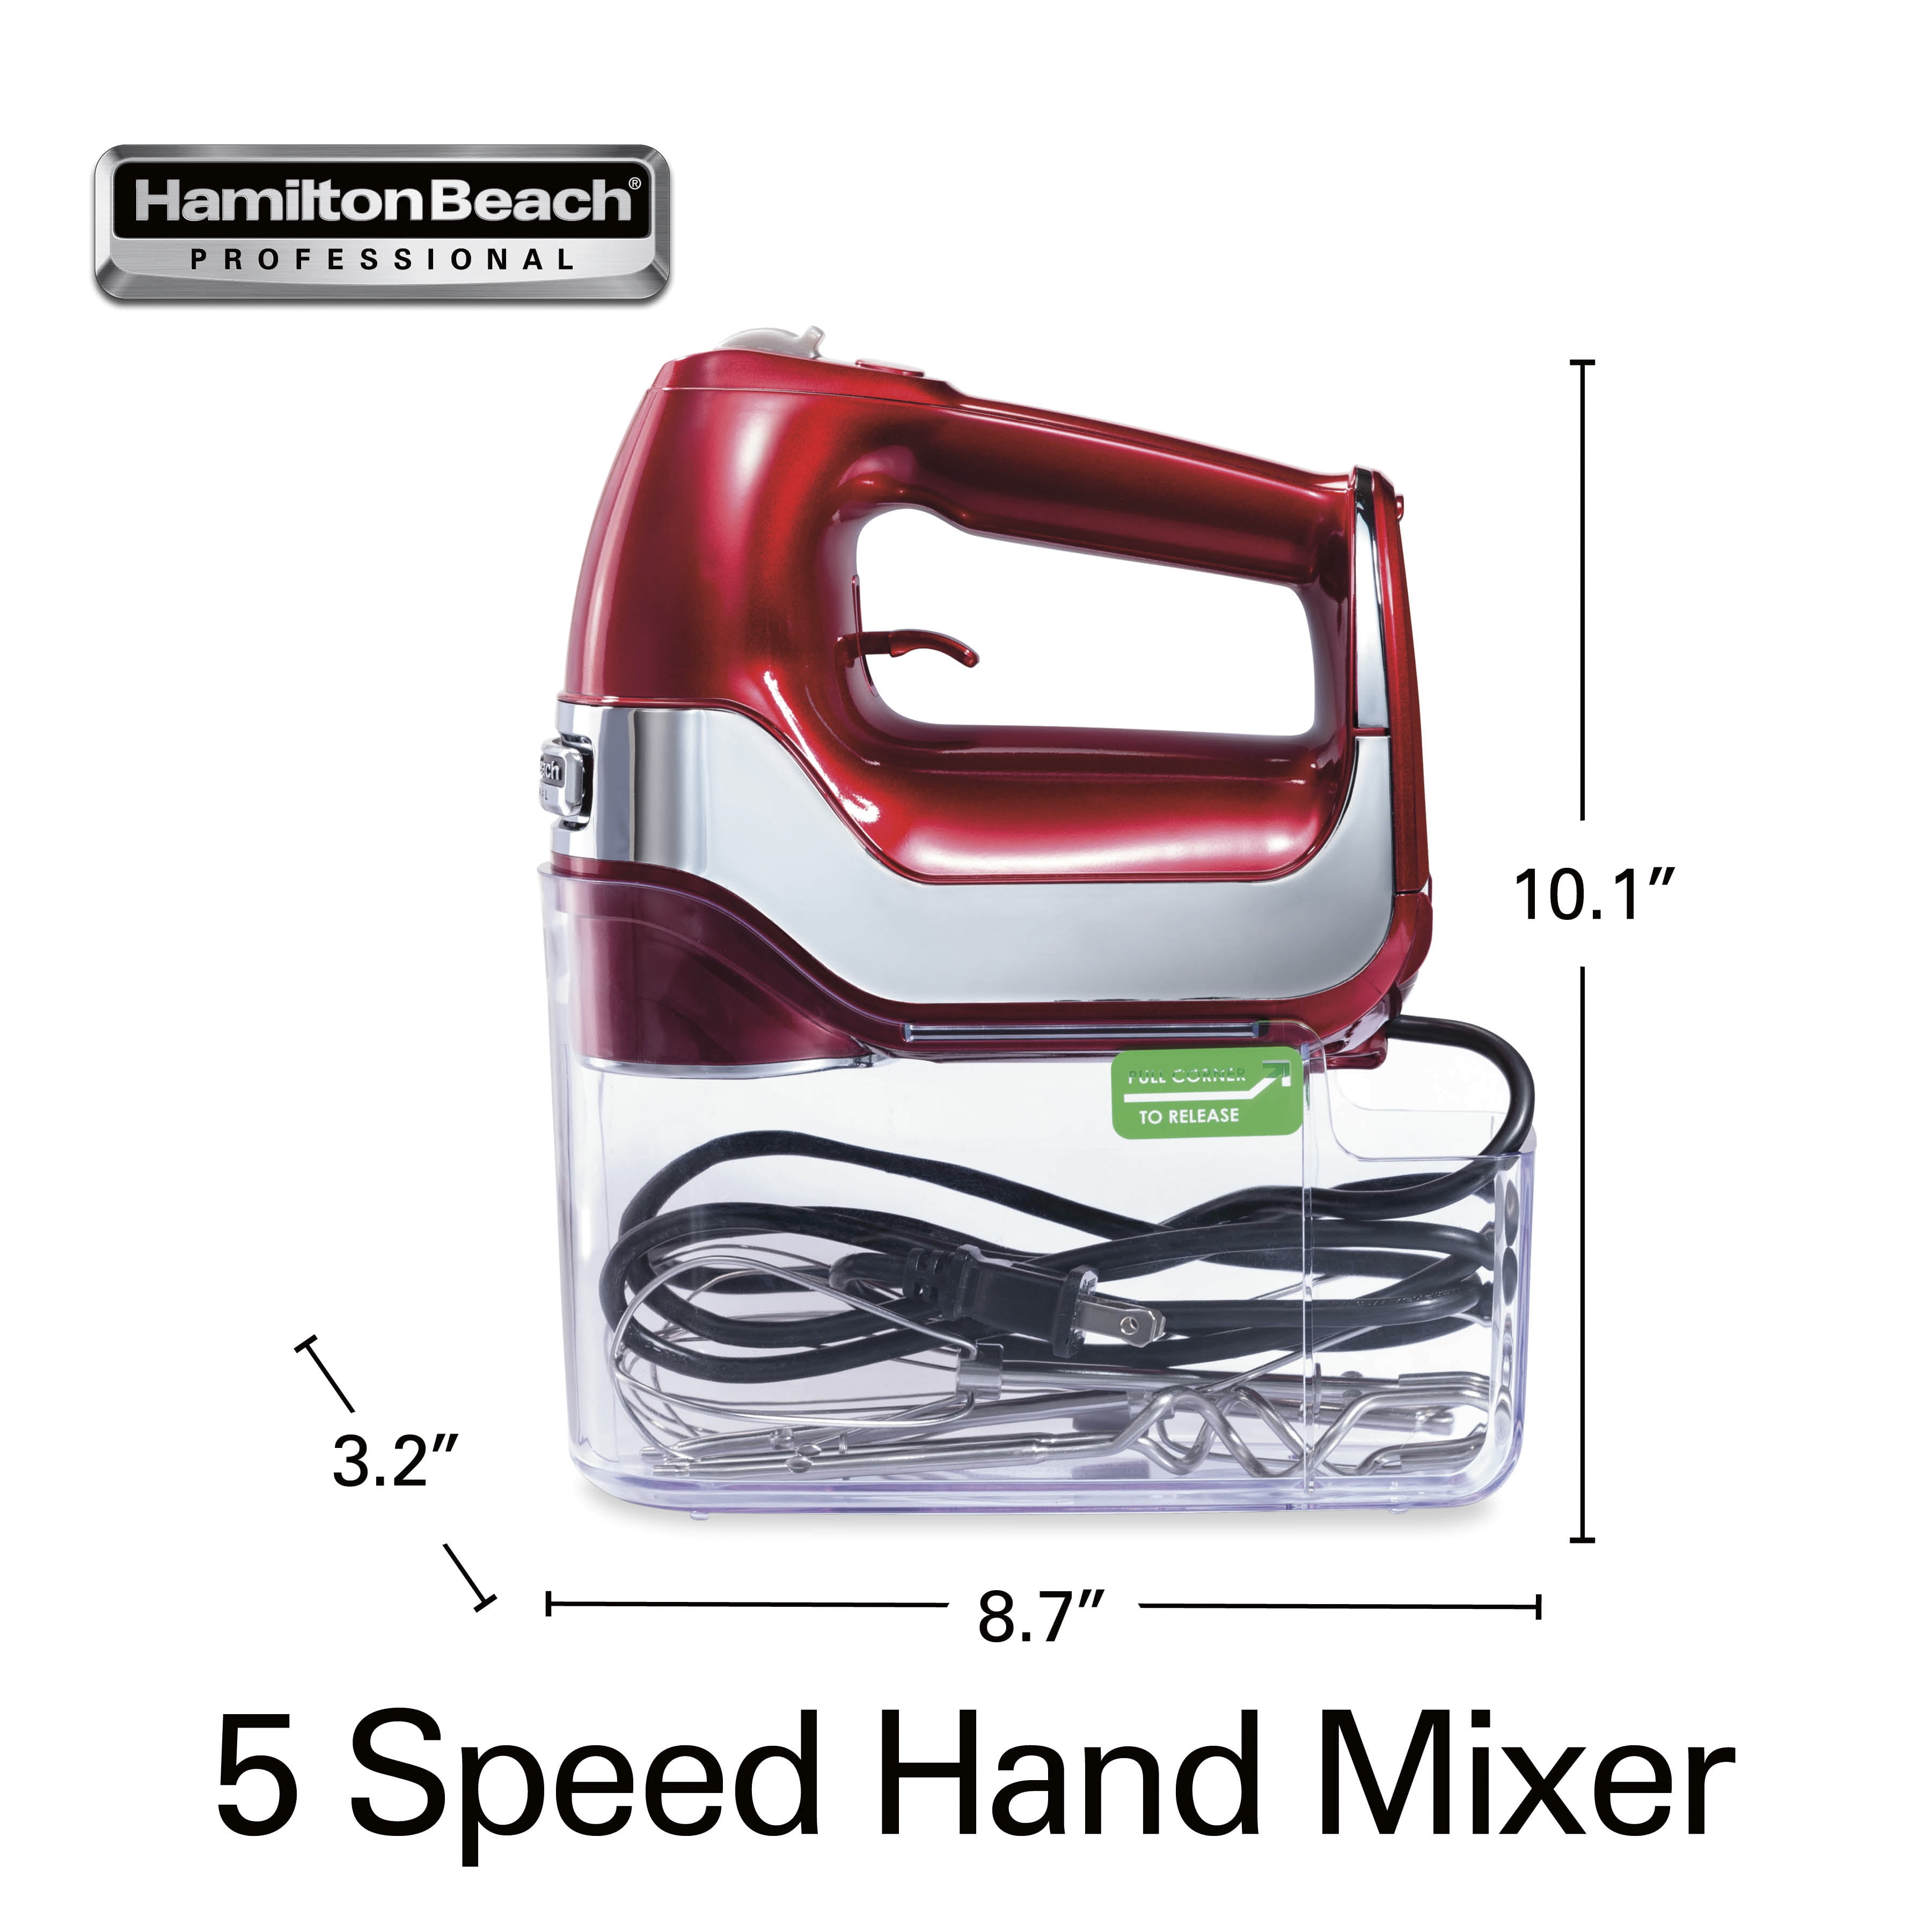 Hamilton Beach Professional 5 Speed Hand Mixer - Macy's